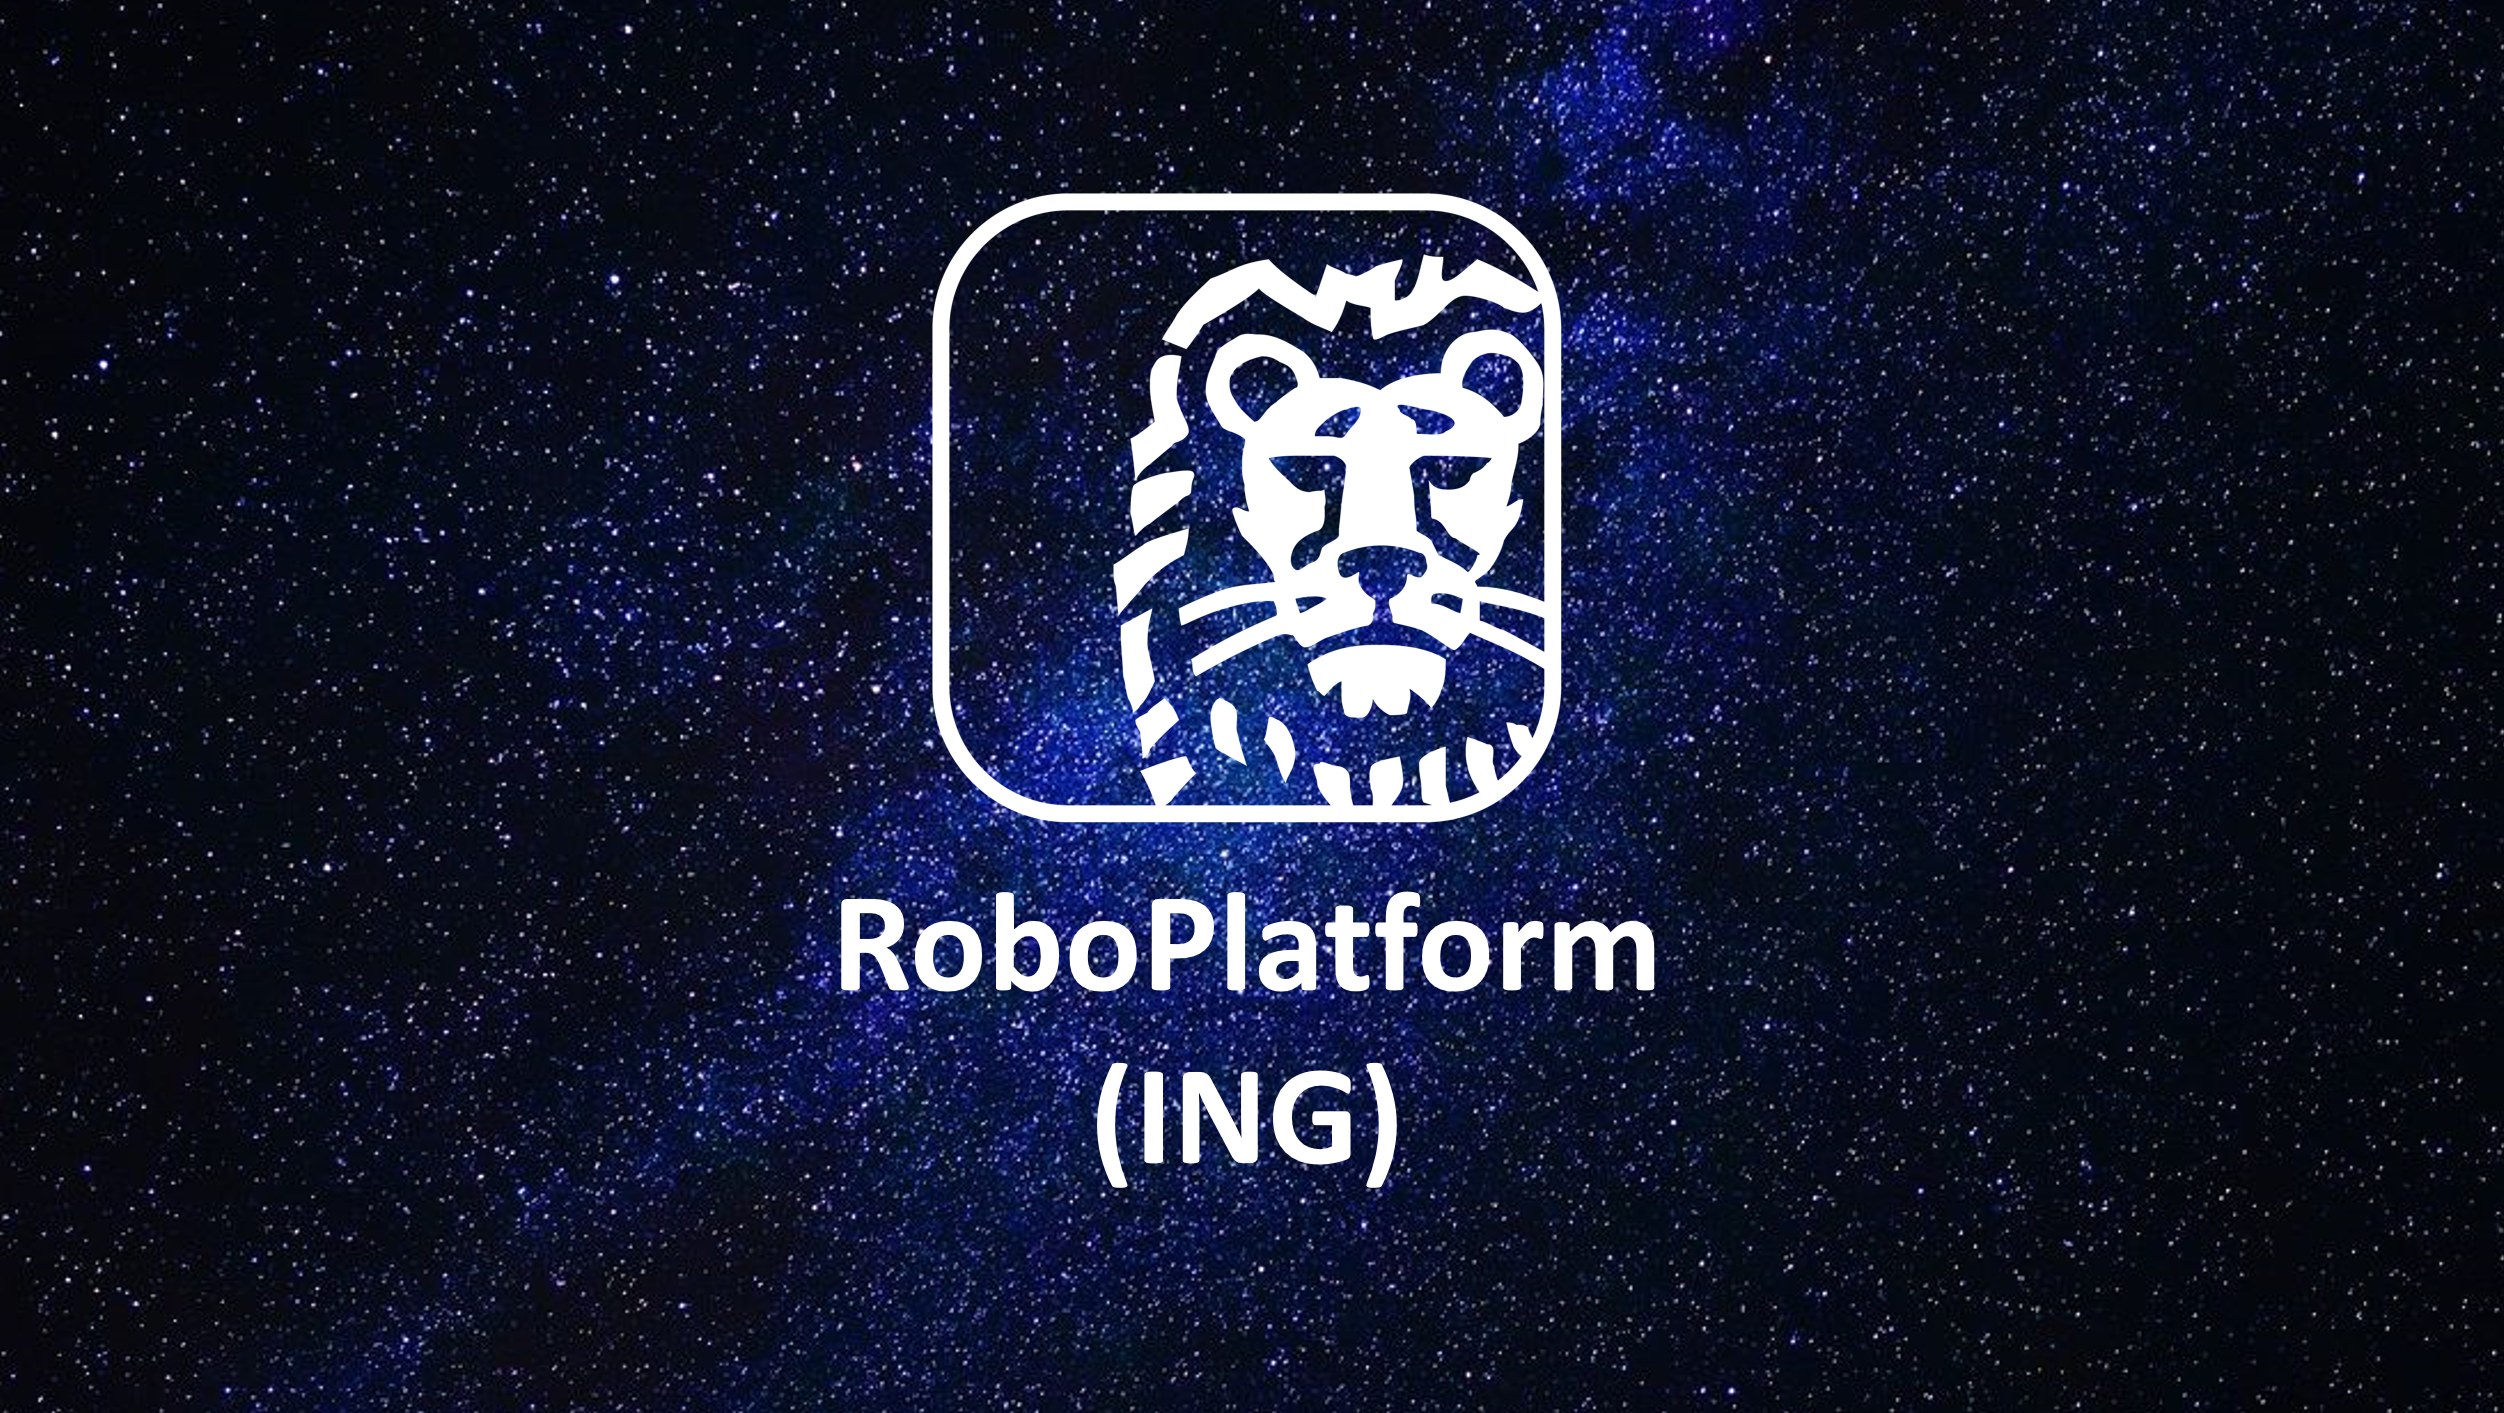 Webinarium z przedstawicielami ING - twórcy RoboPlatform - w ramach serii 